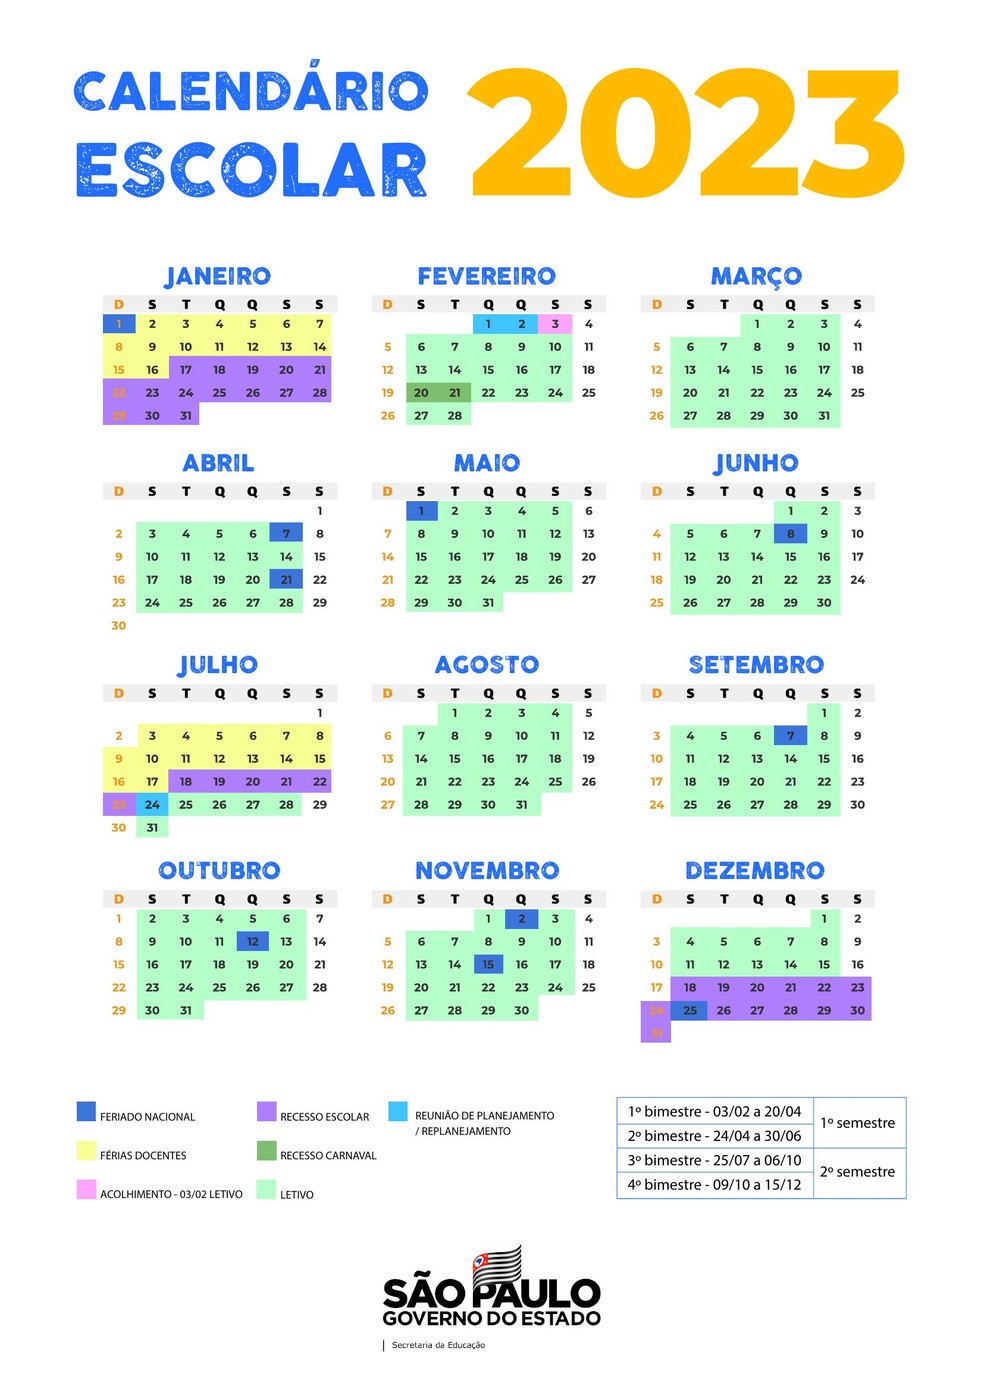 Calendário escolar da rede estadual de ensino de SP para o ano de 2023 — Foto: Reprodução